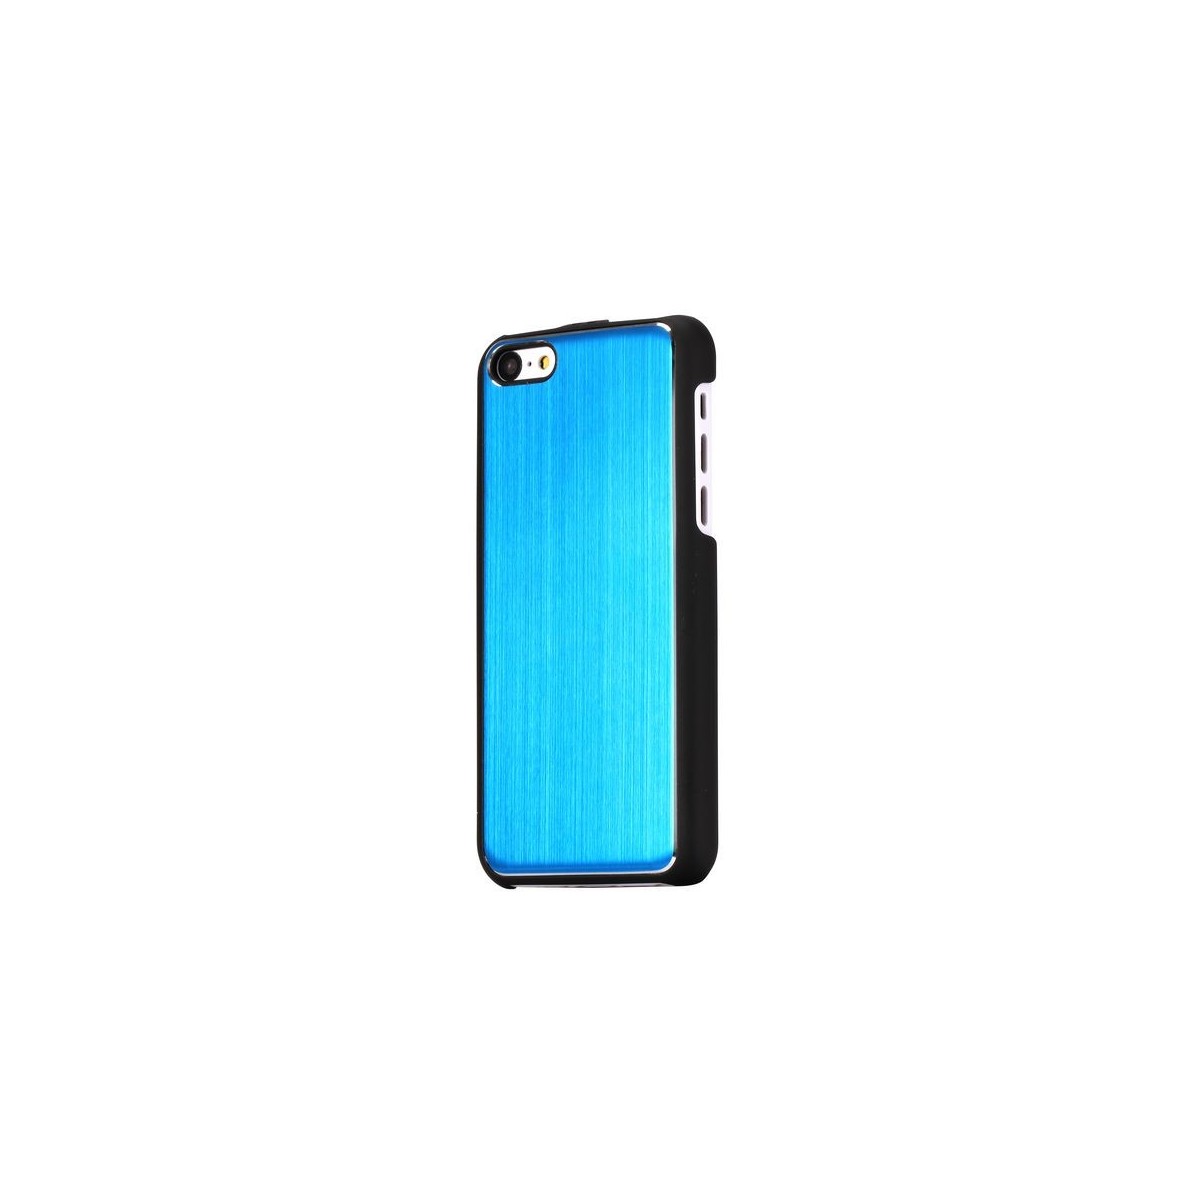 Crazy Kase - Coque iPhone 5C noire et Aluminium brossé bleu